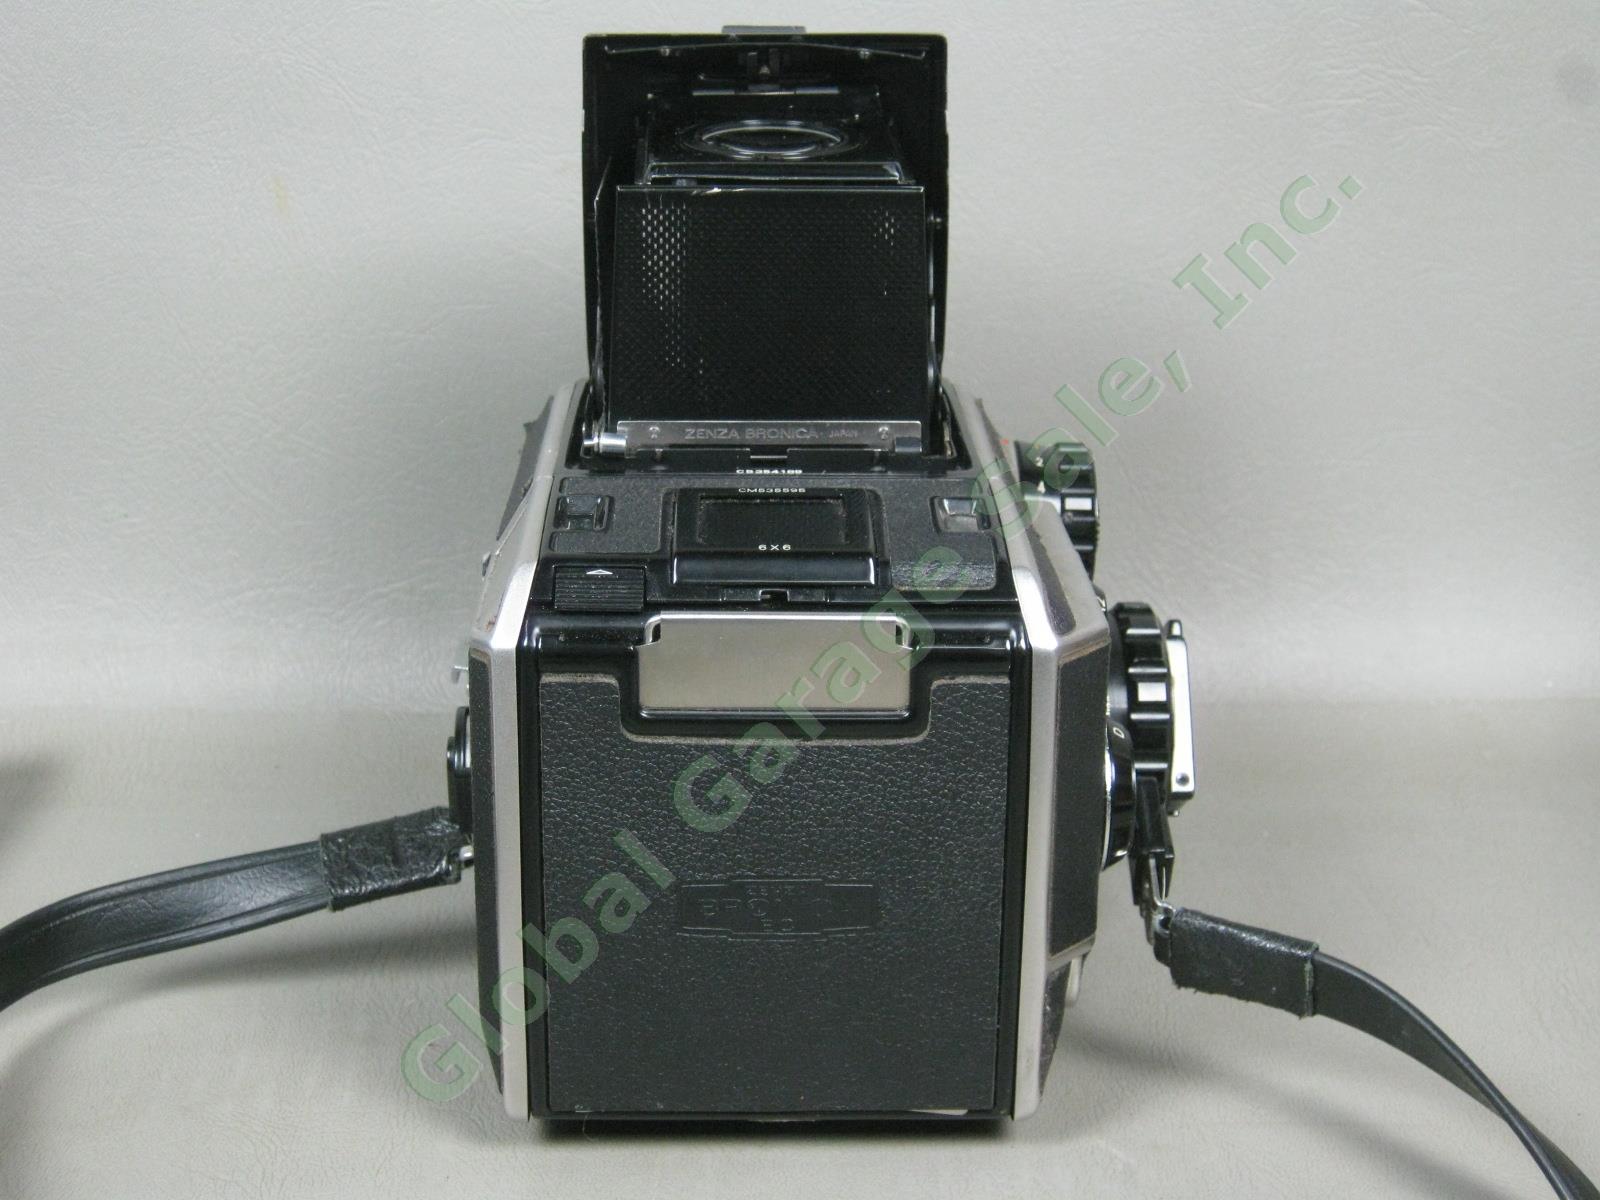 Zenza Bronica EC-TL Camera Nippon Kogaku Nikkor-H 50mm 1:3.5 f/3.5 Lens Bundle 4